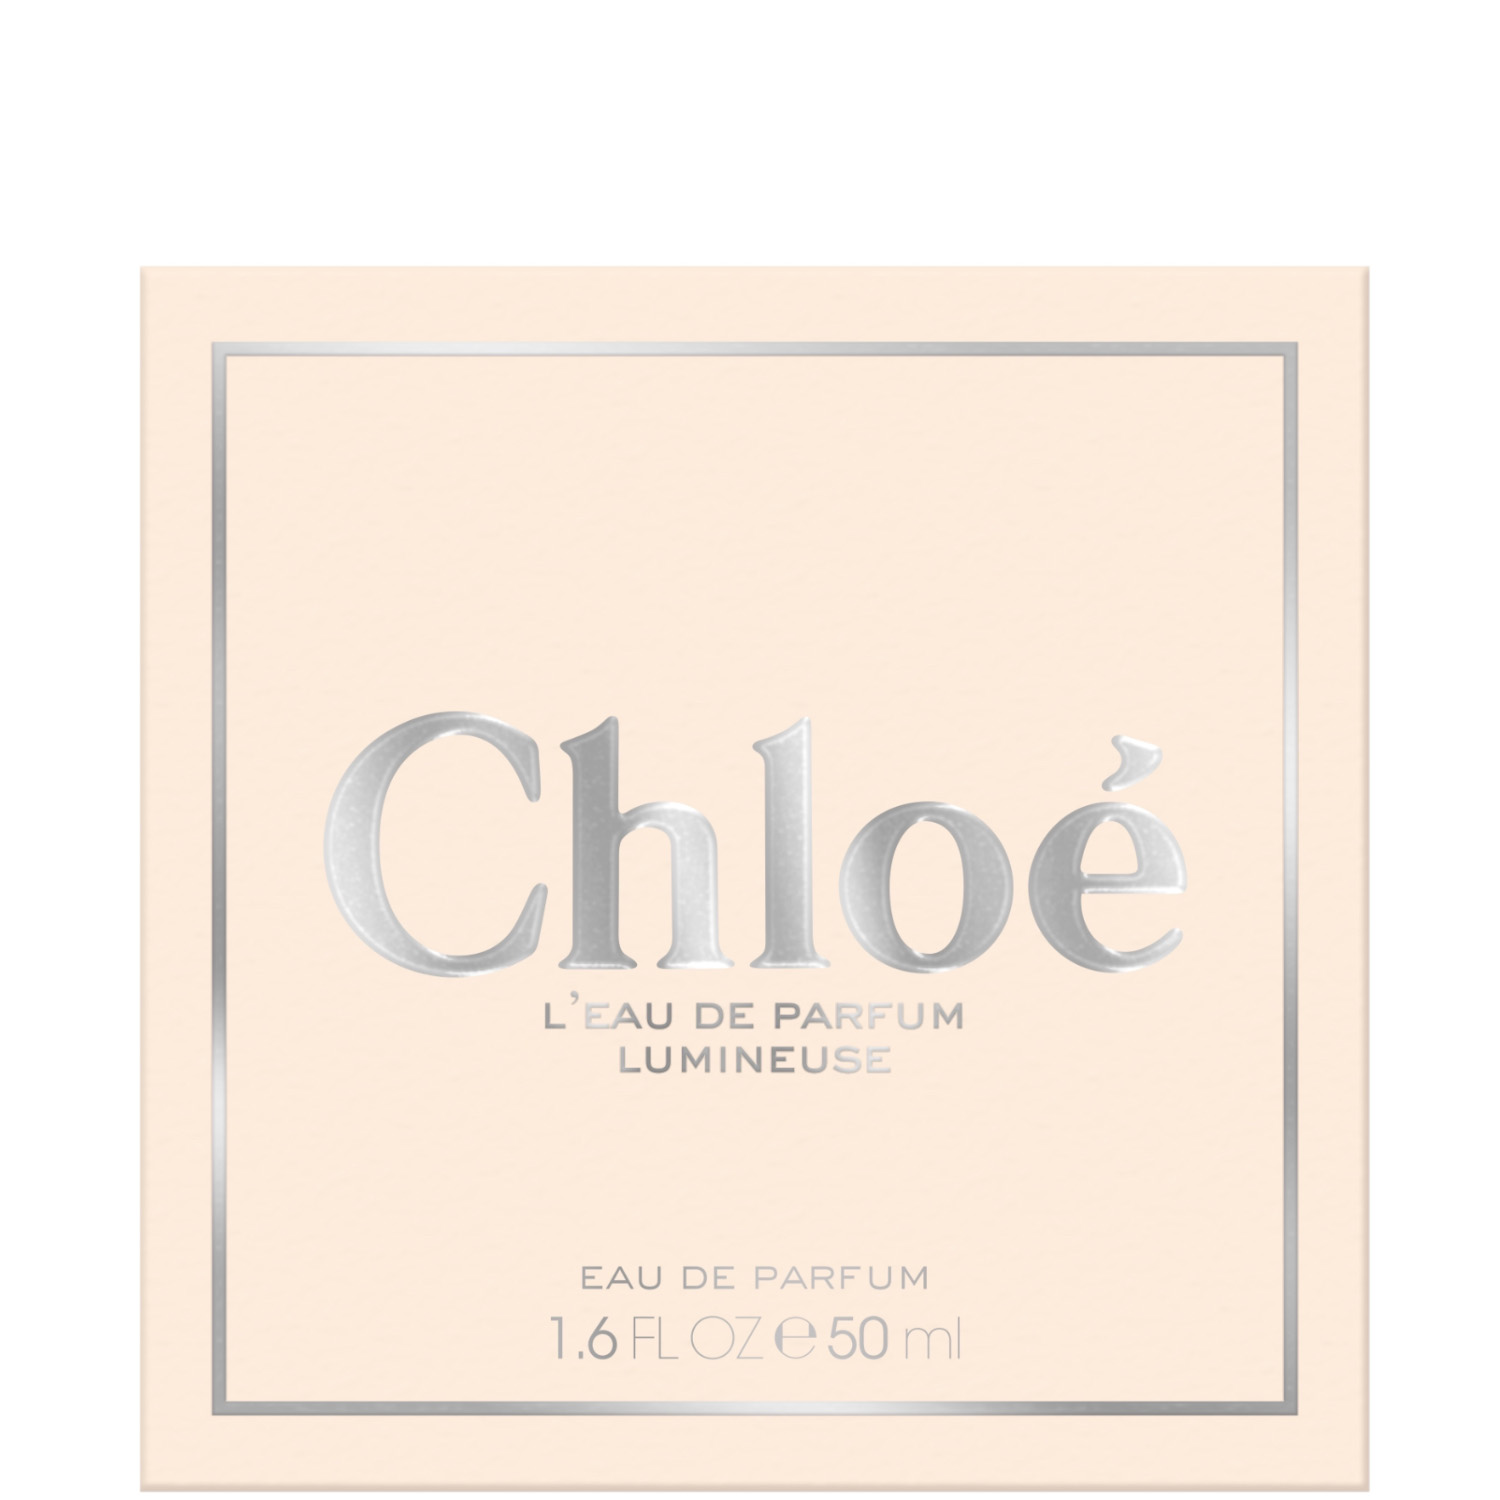 Chloé L‘Eau de Parfum Lumineuse 50ml